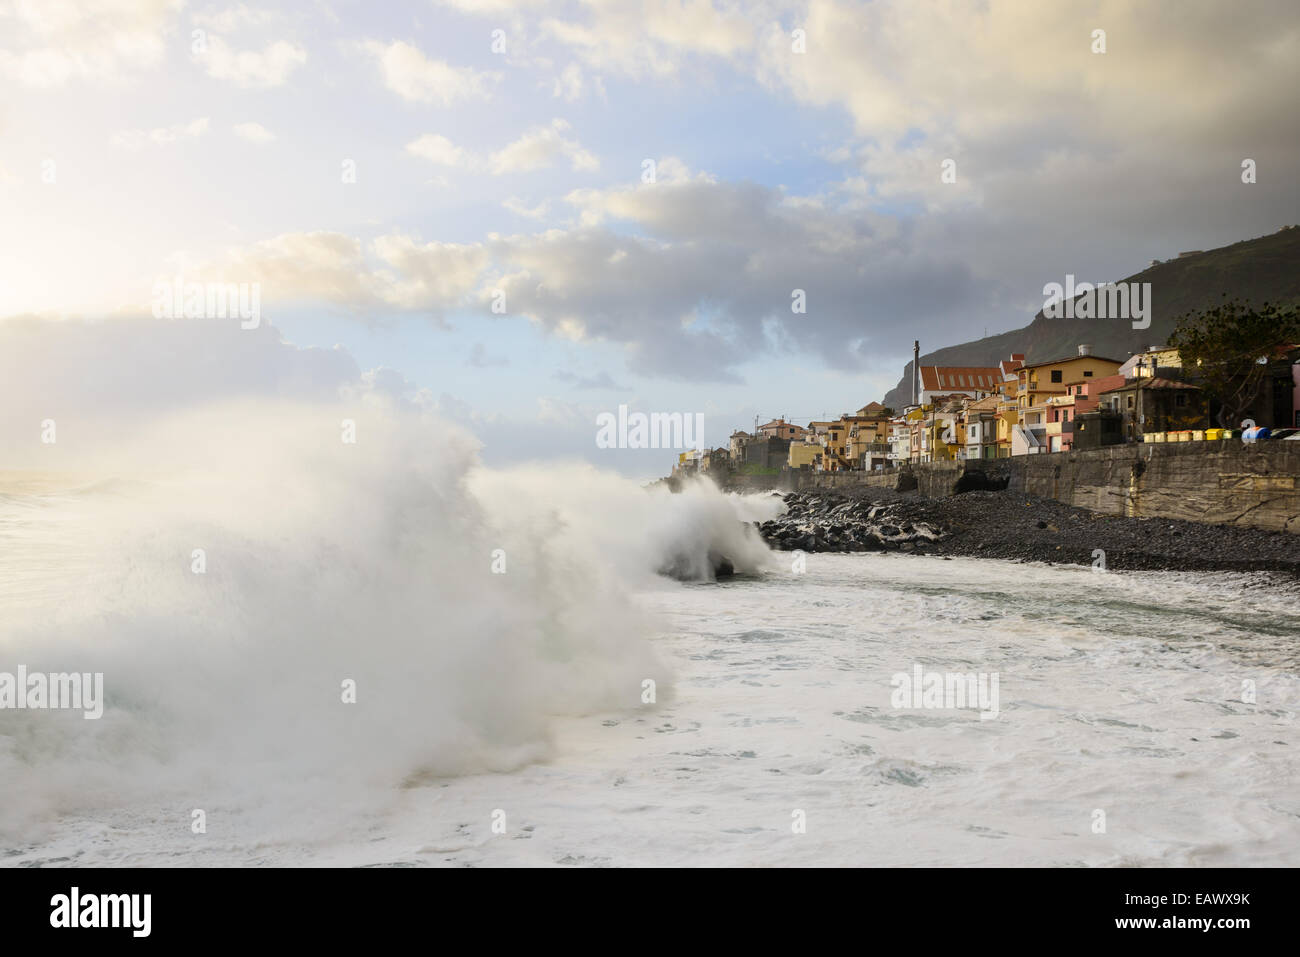 Large foamy wave crashing onto shore Stock Photo